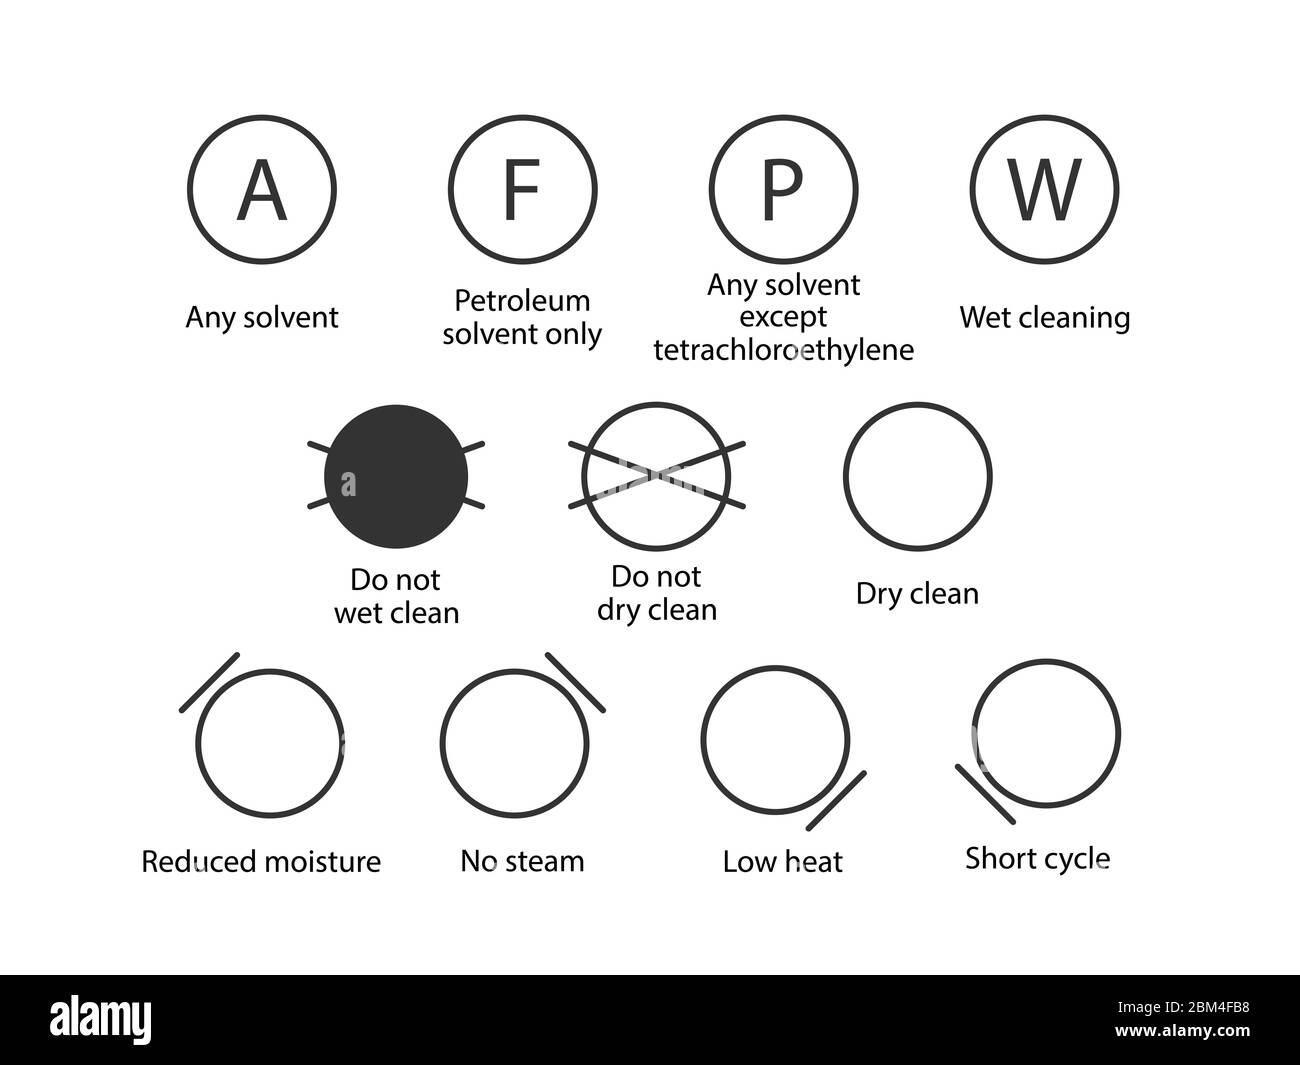 Symbole für Wäsche, Symbole für chemische Reinigung. Vektorgrafik, flaches Design. Stock Vektor